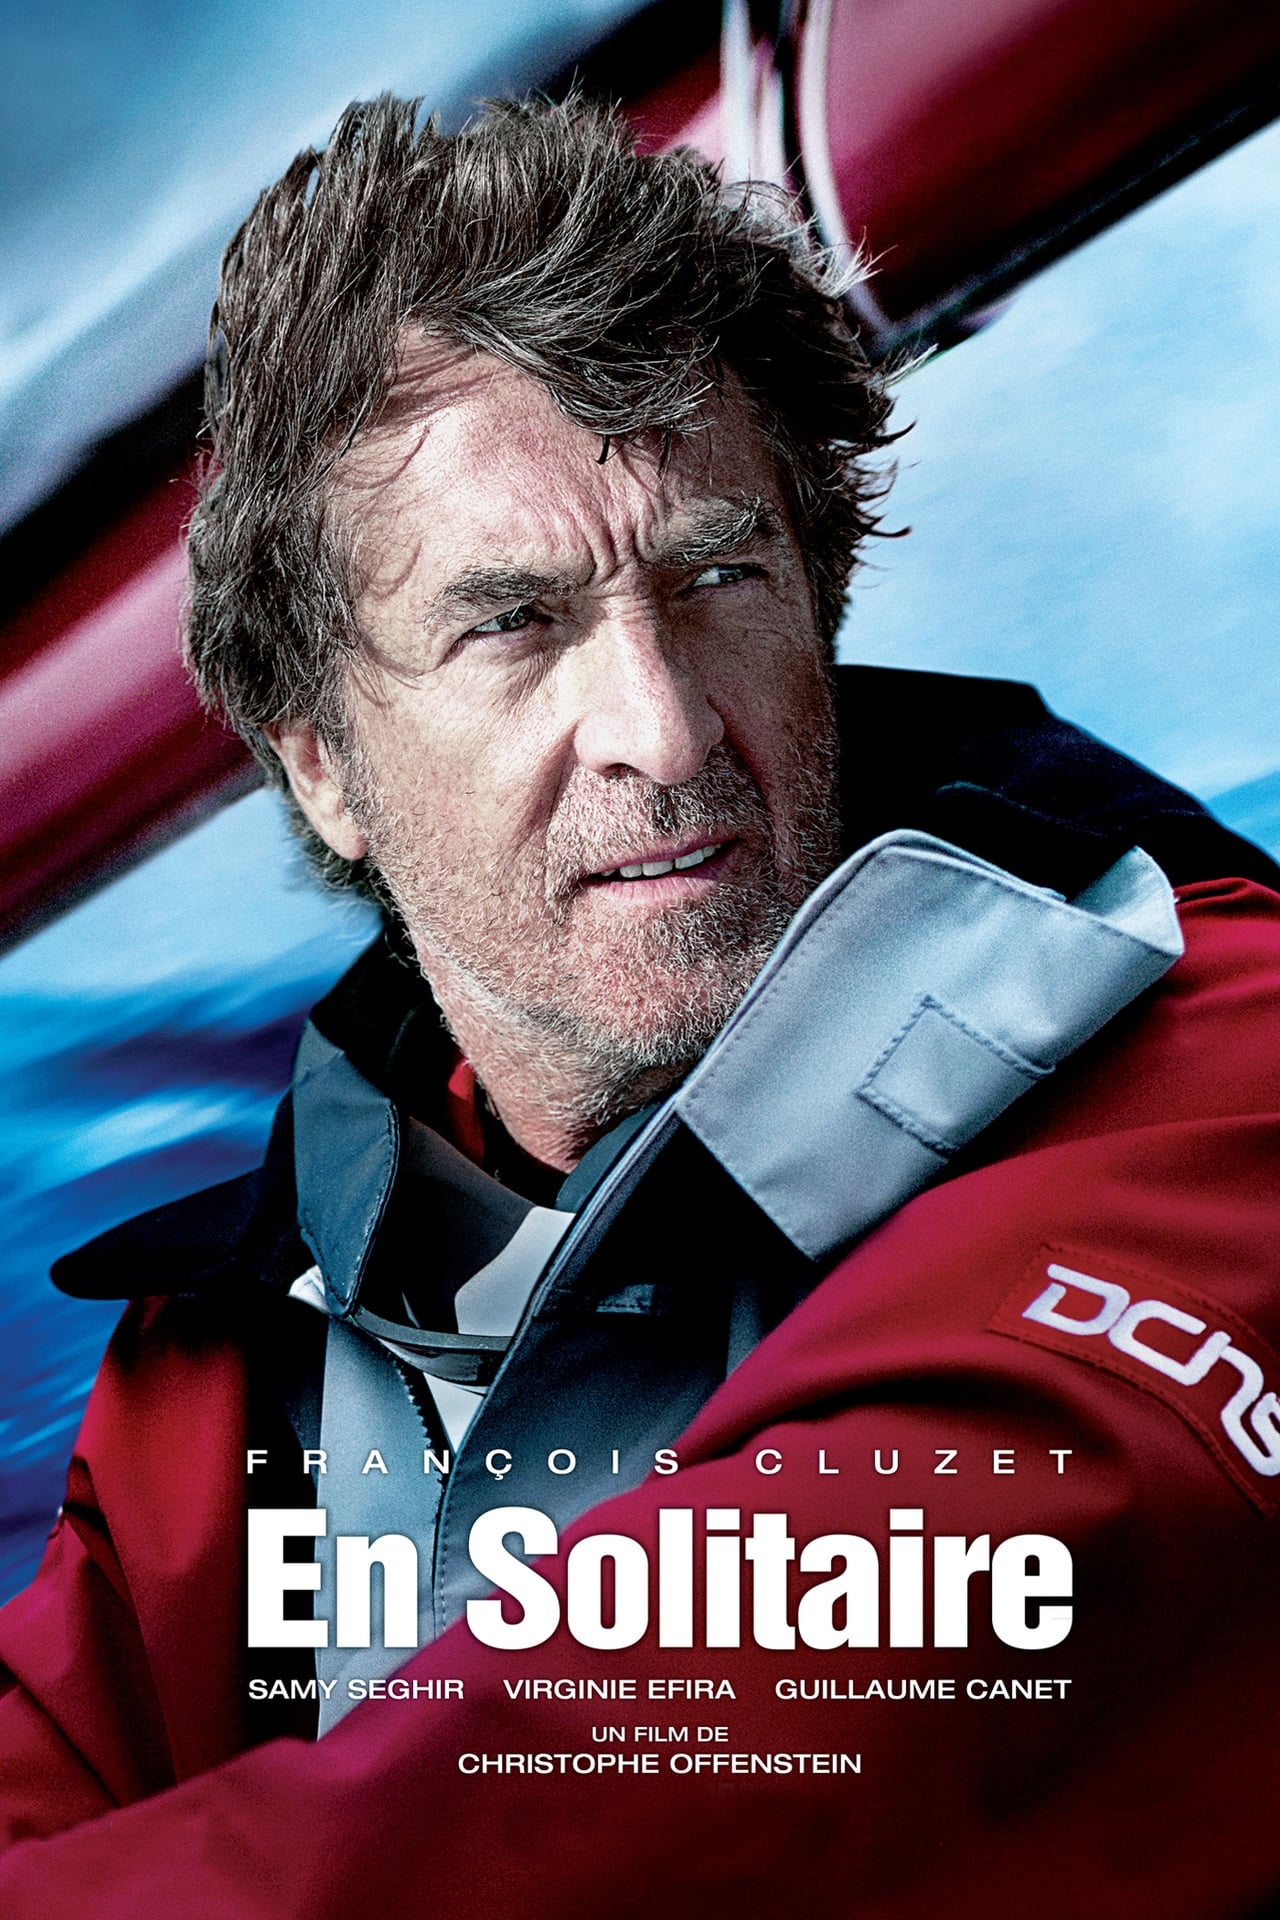 FR - En Solitaire (2013) - JEAN-PAUL ROUVE